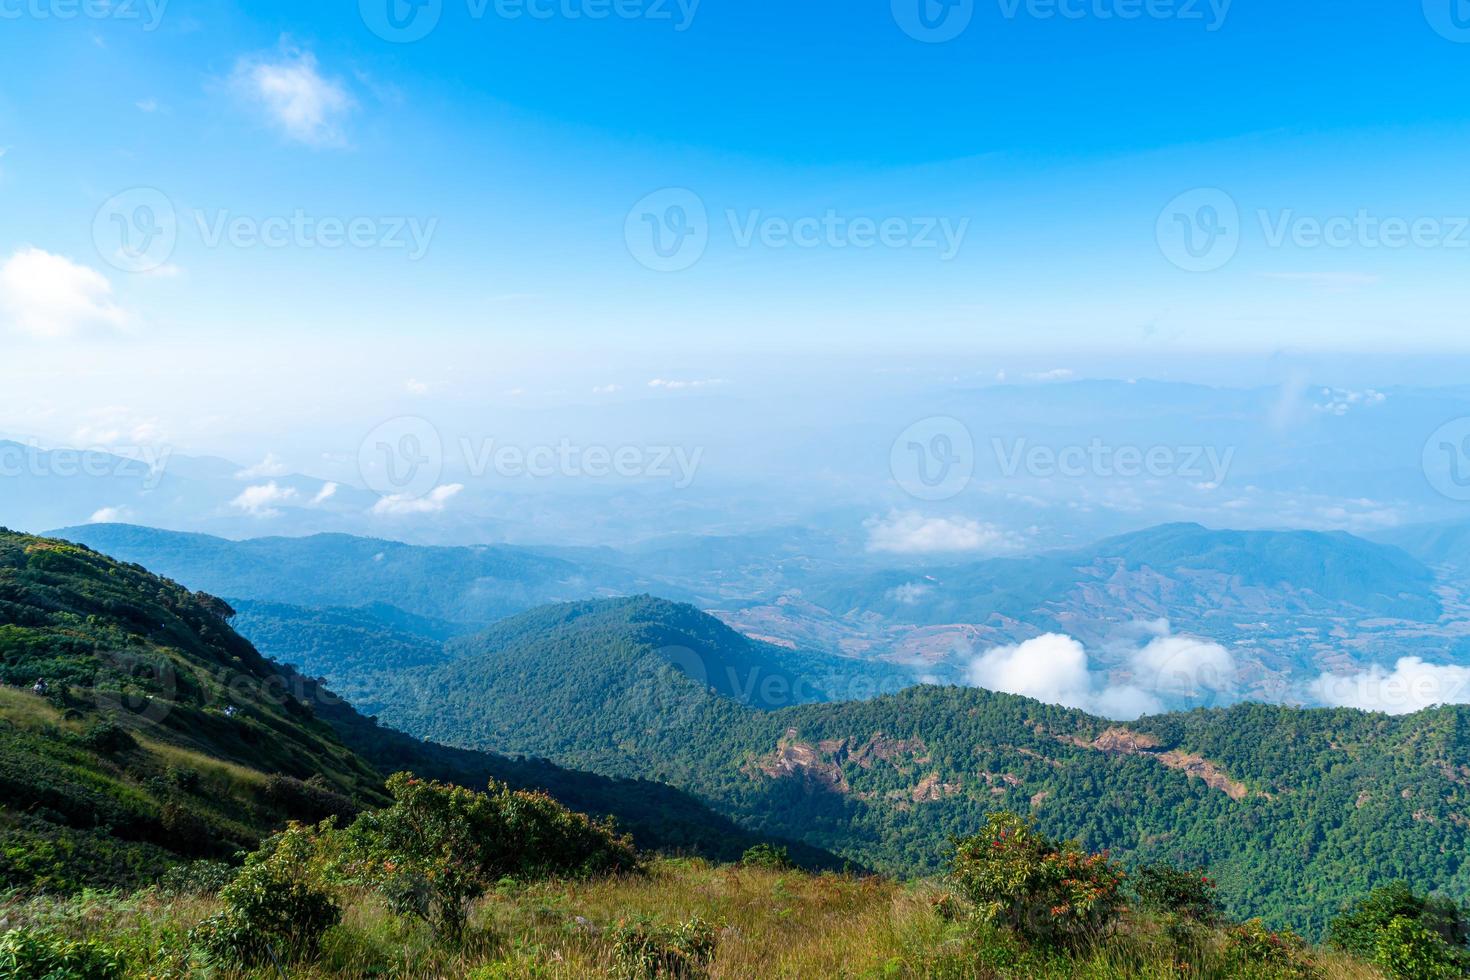 belle couche de montagne avec nuages et ciel bleu à kew mae pan nature trail à chiang mai, thaïlande photo